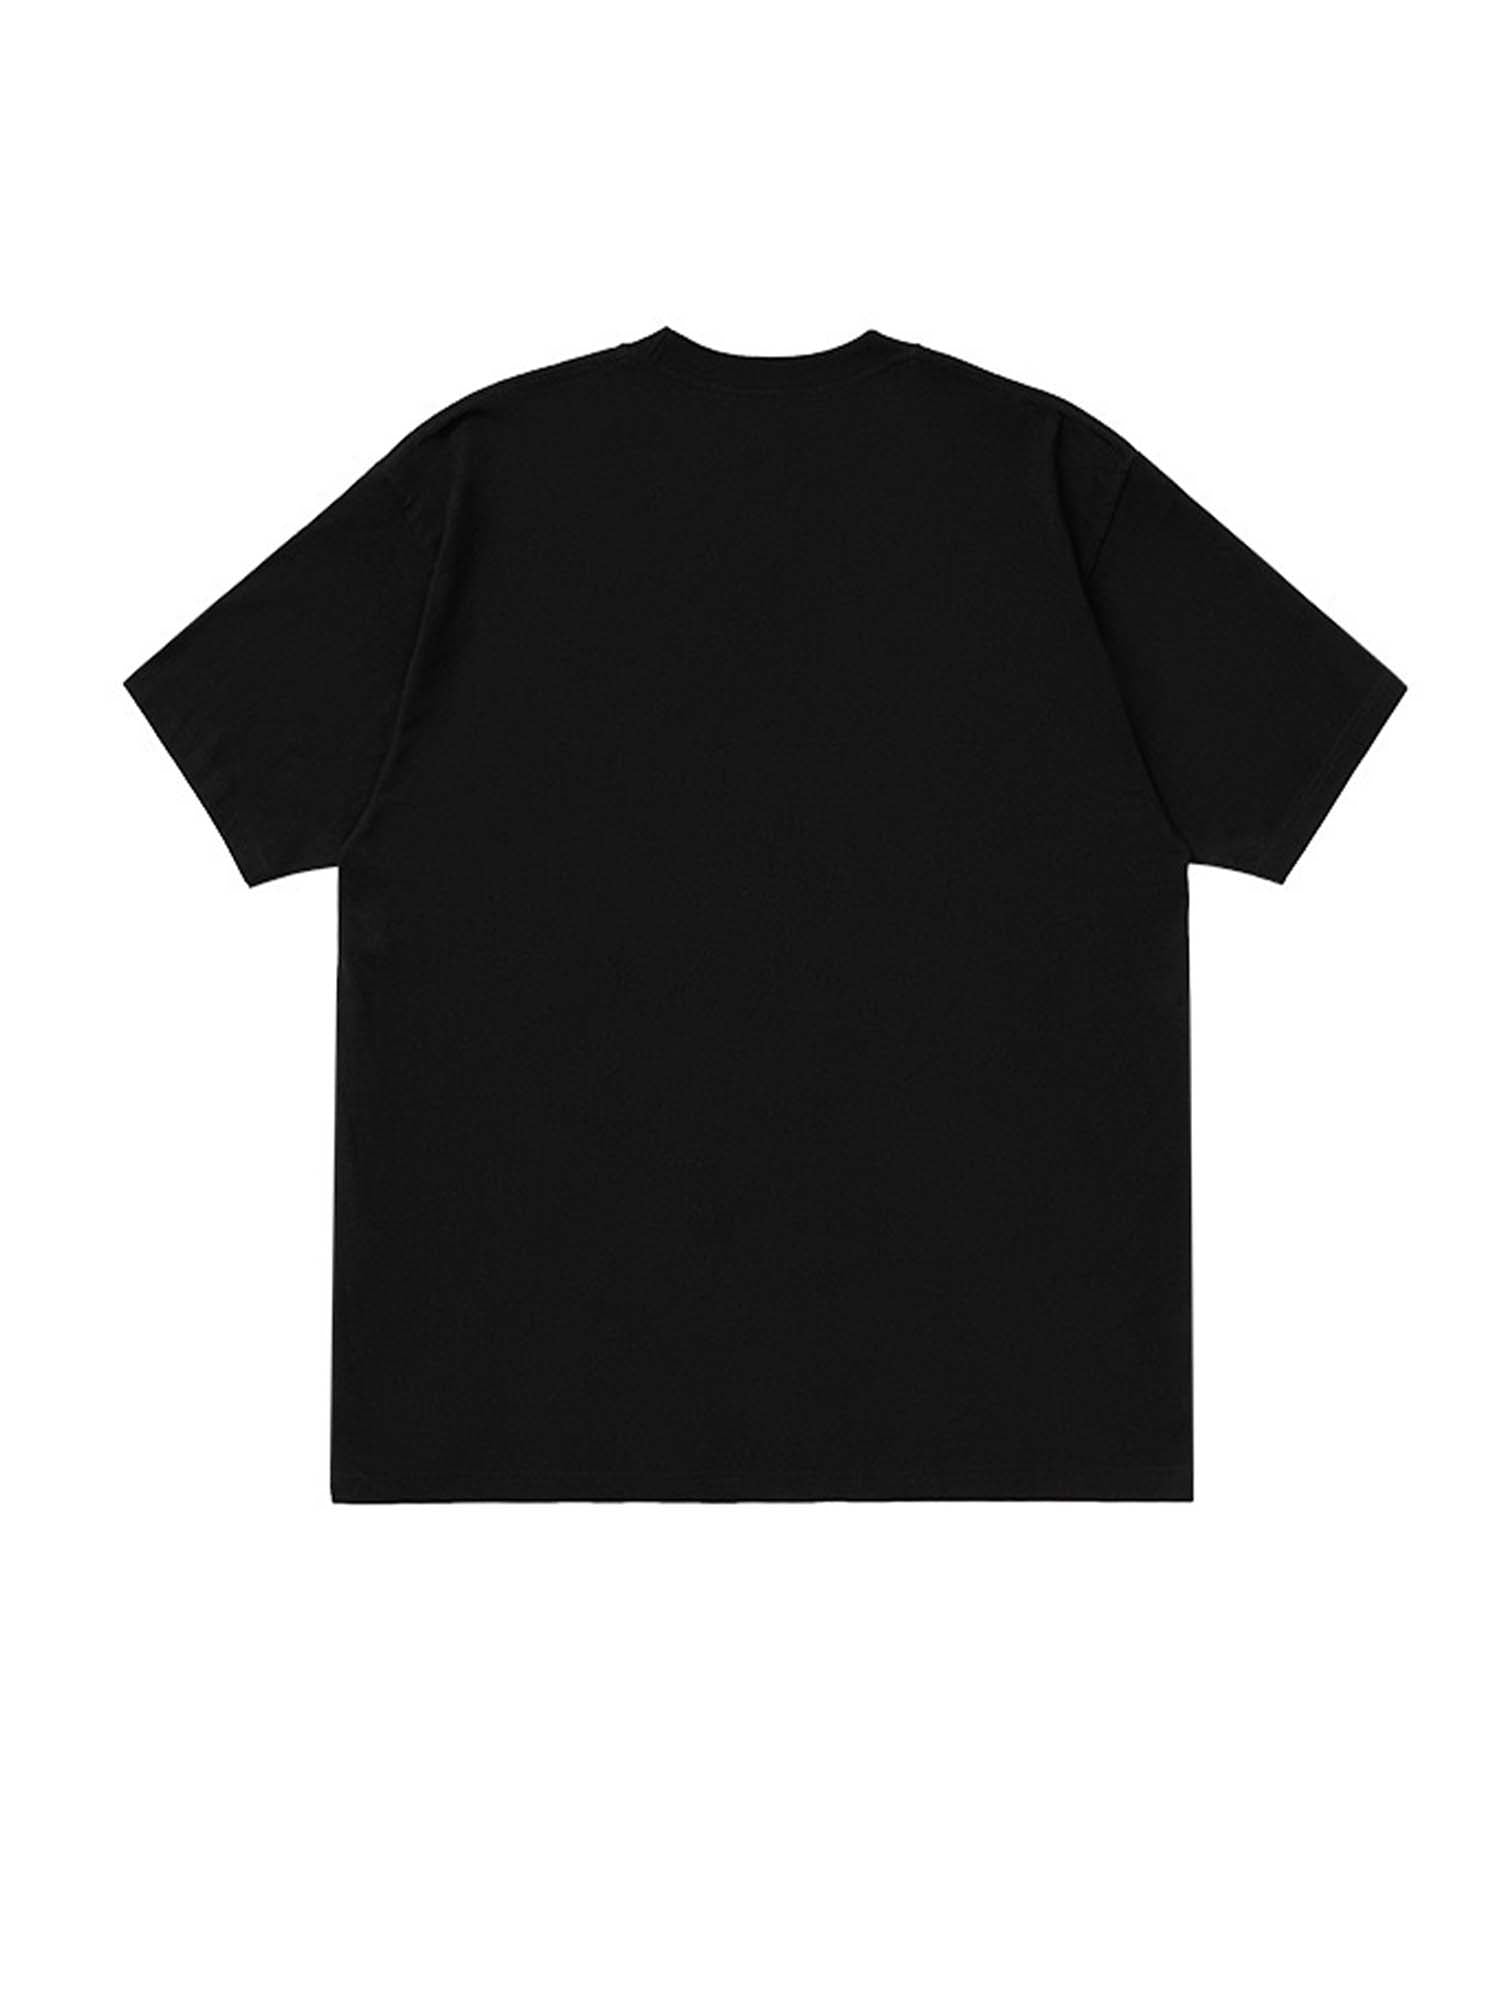 Justnotag Hip Hop Rap Singer T-shirt à manches courtes en coton imprimé